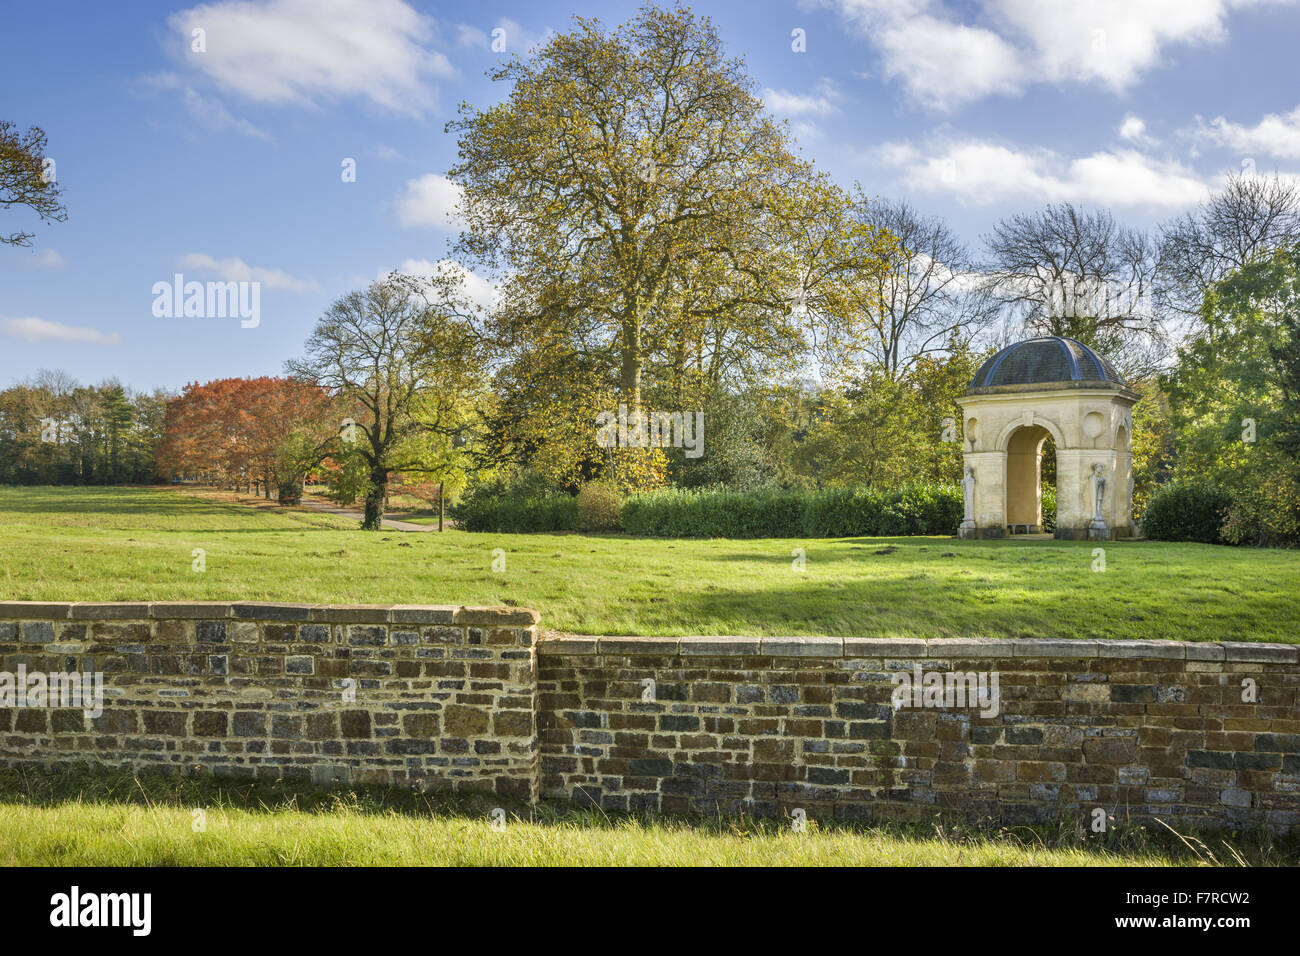 Il Fane di poesia pastorale a Stowe, Buckinghamshire. Stowe è un palazzo del diciottesimo secolo giardino paesaggistico e include più di 40 templi storici e monumenti. Foto Stock